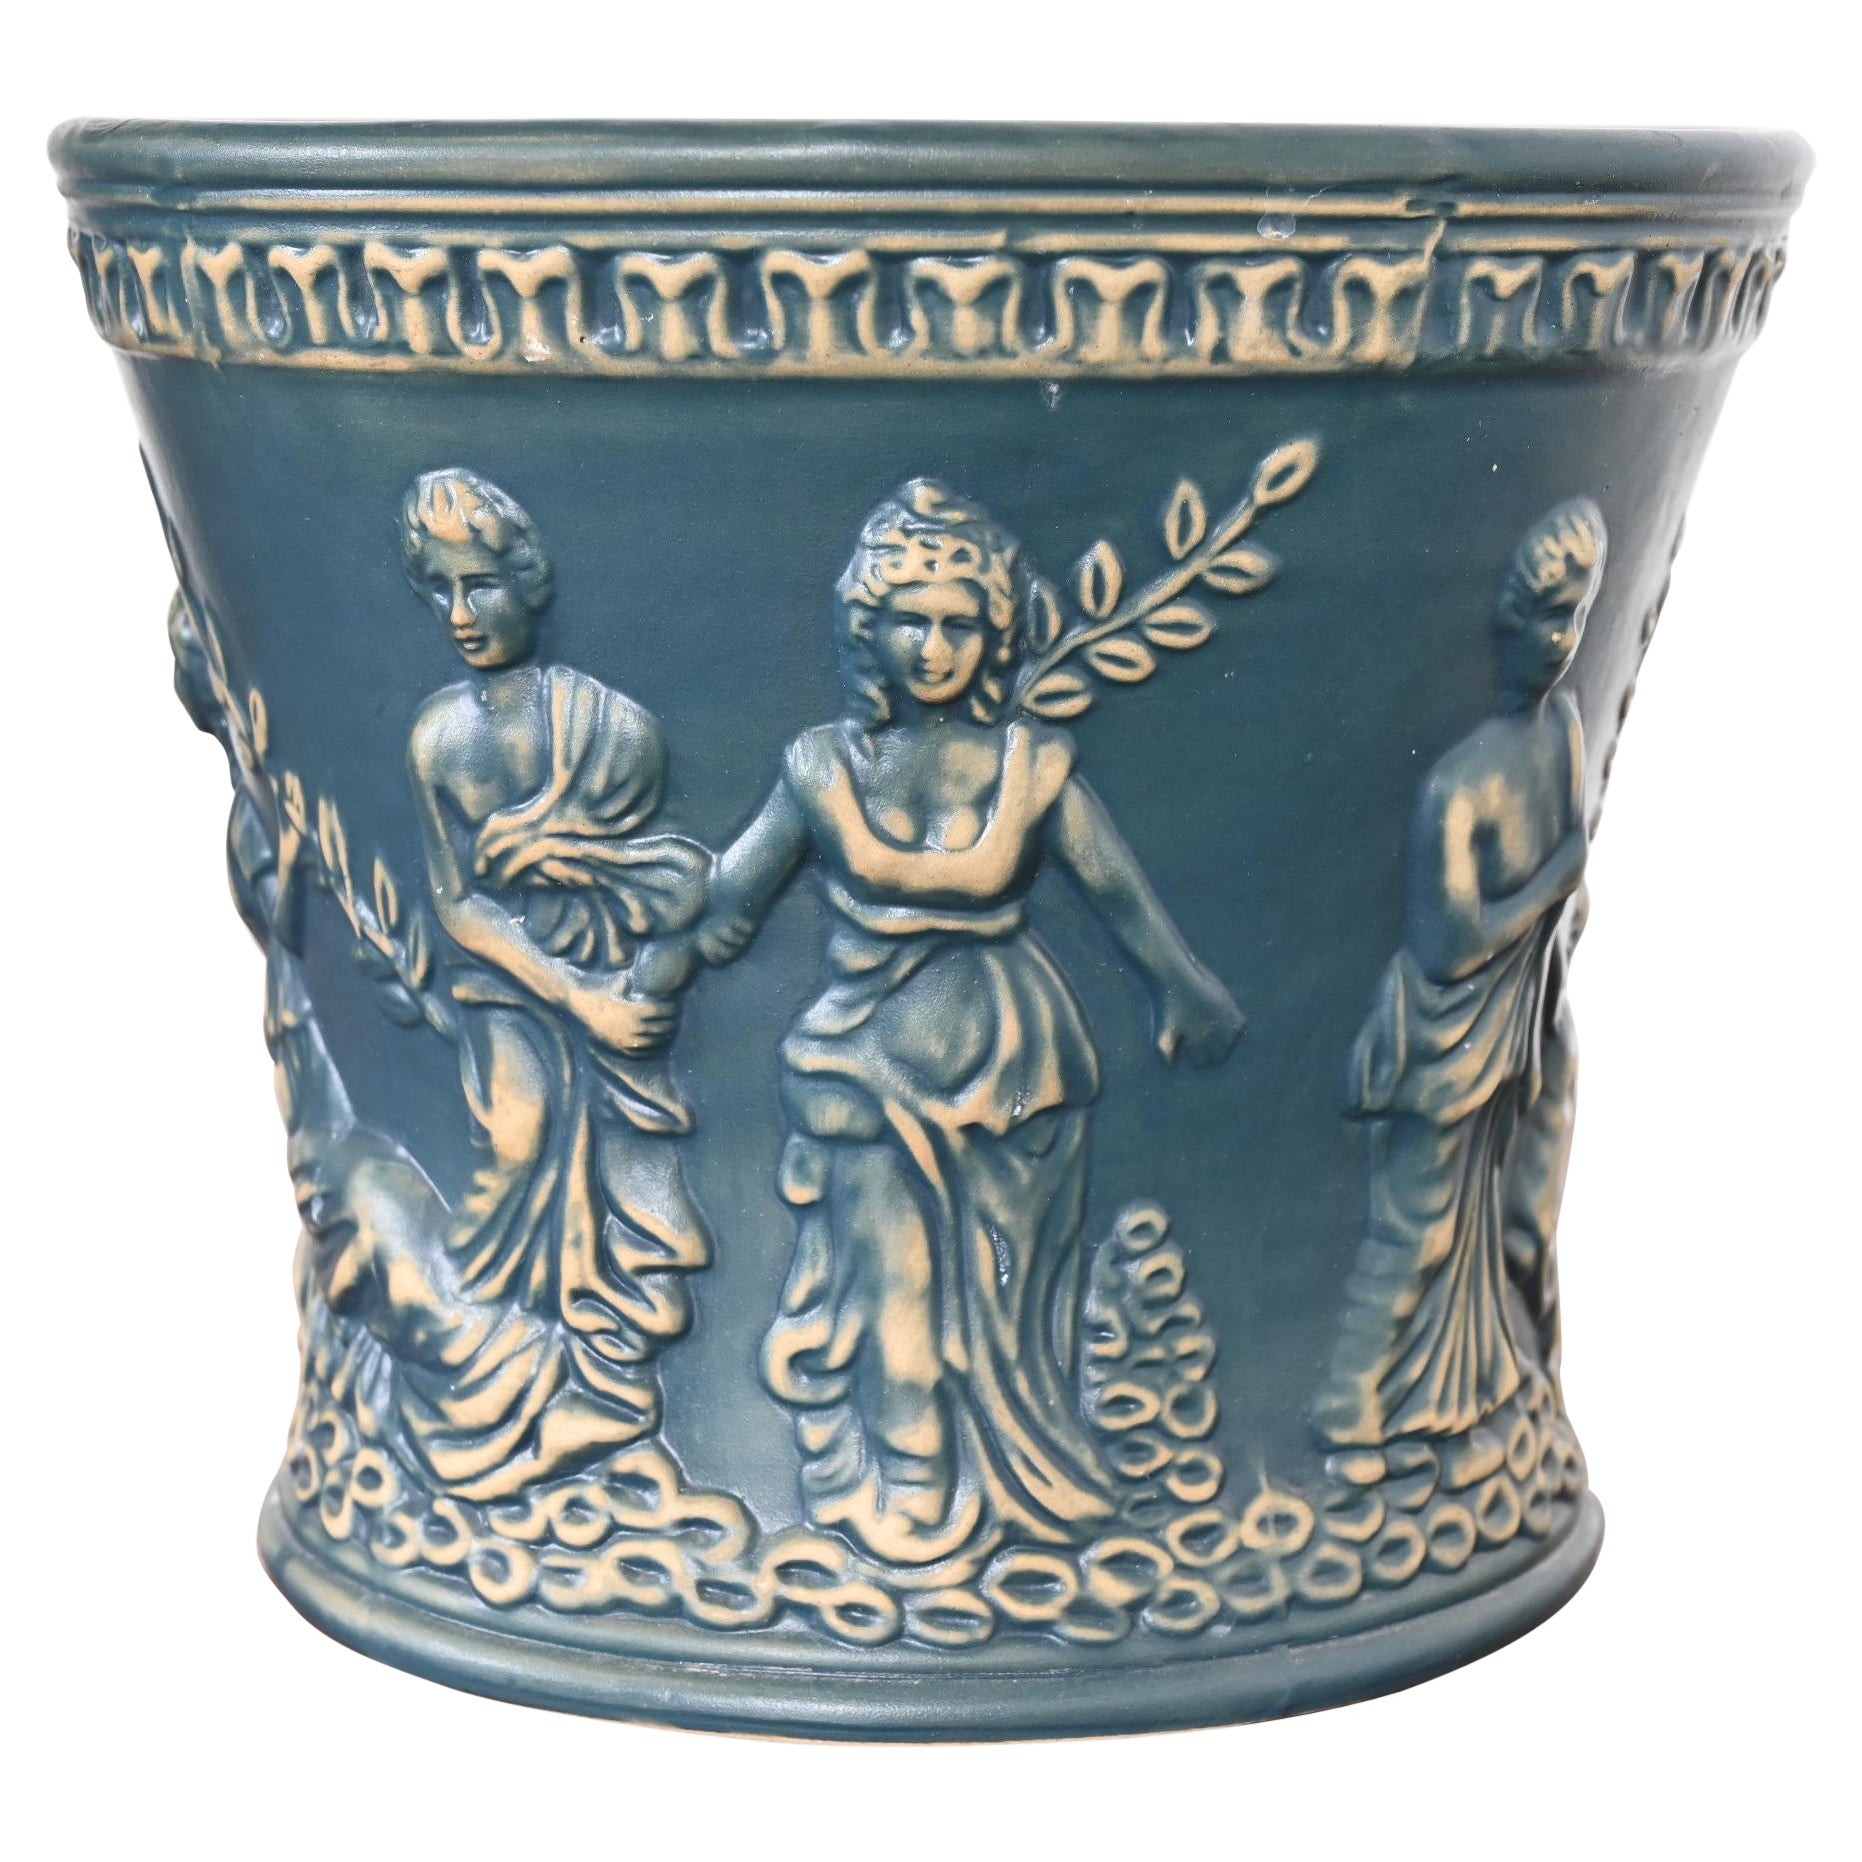 Roseville Art Pottery Figural Planter